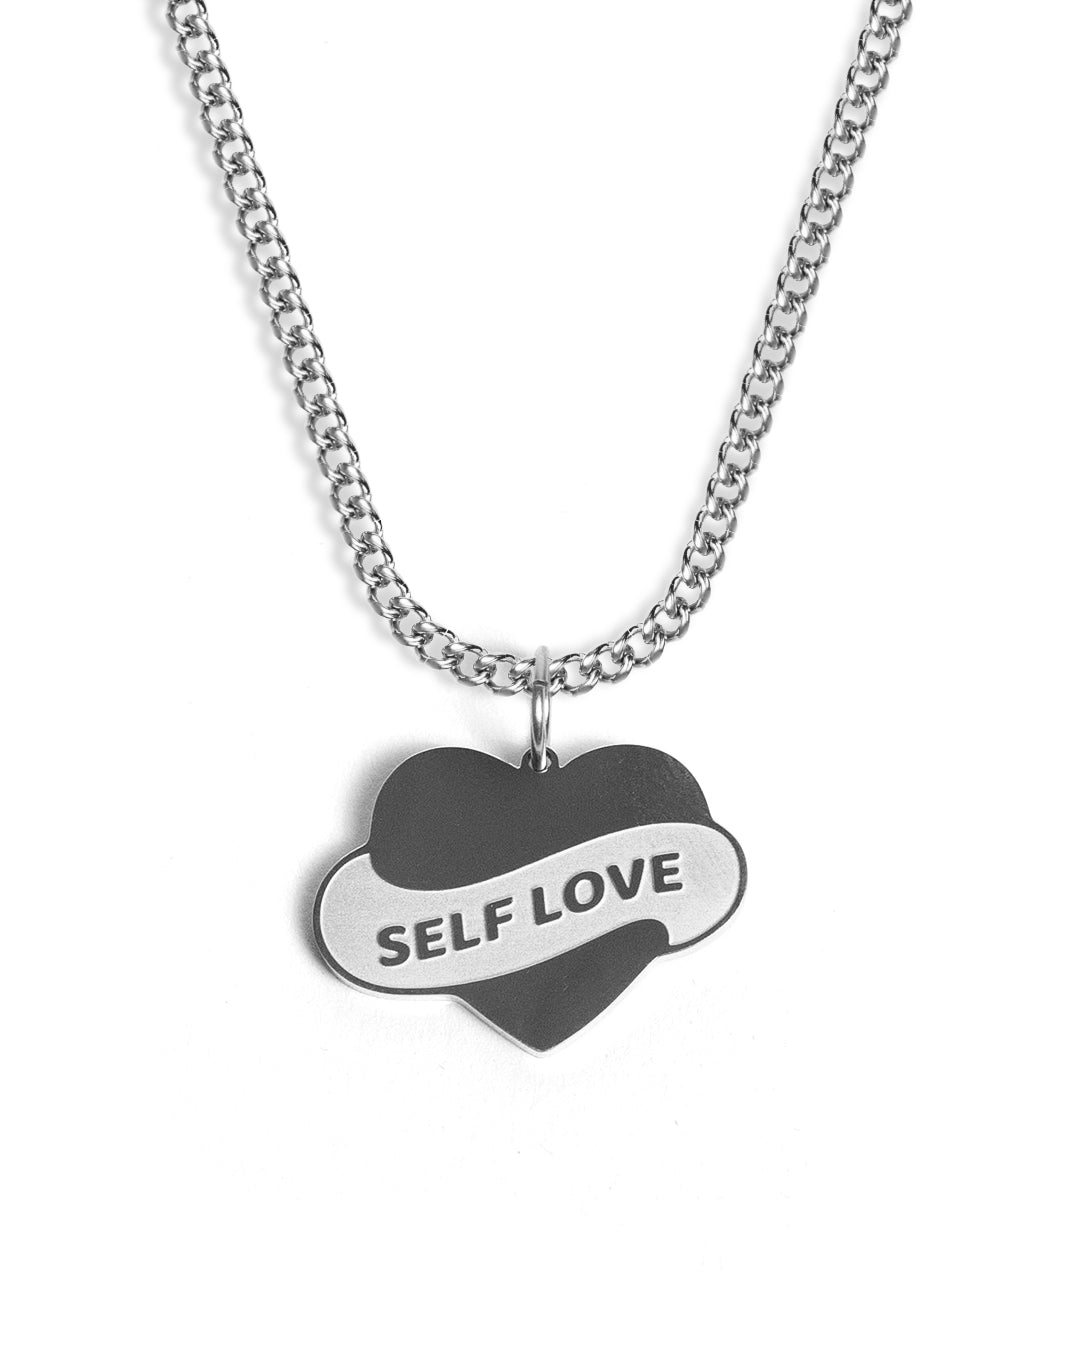 Self Love (Silver)